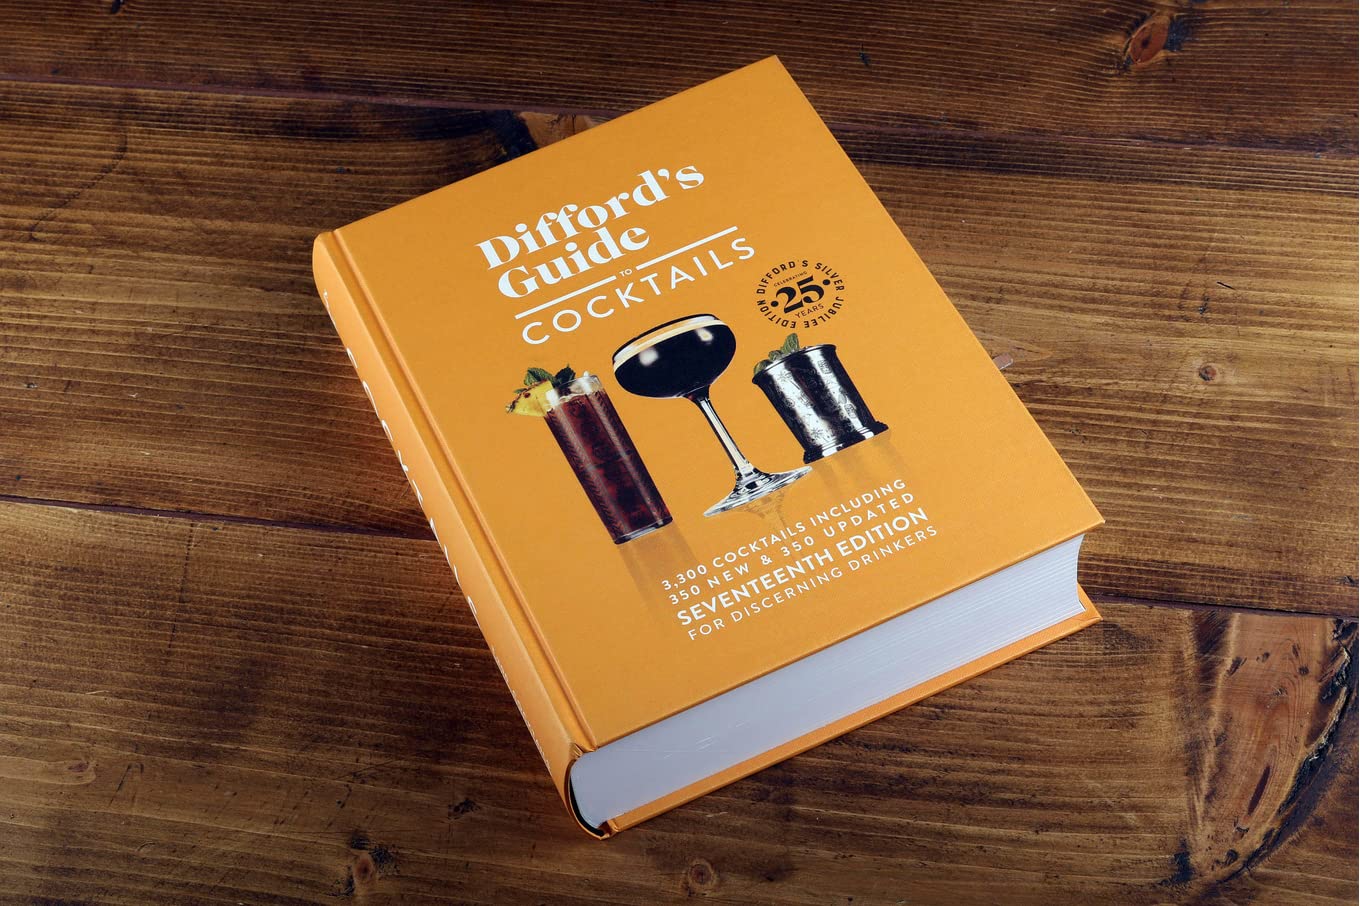 Diffords Guide to Cocktails Seventeenth Edition